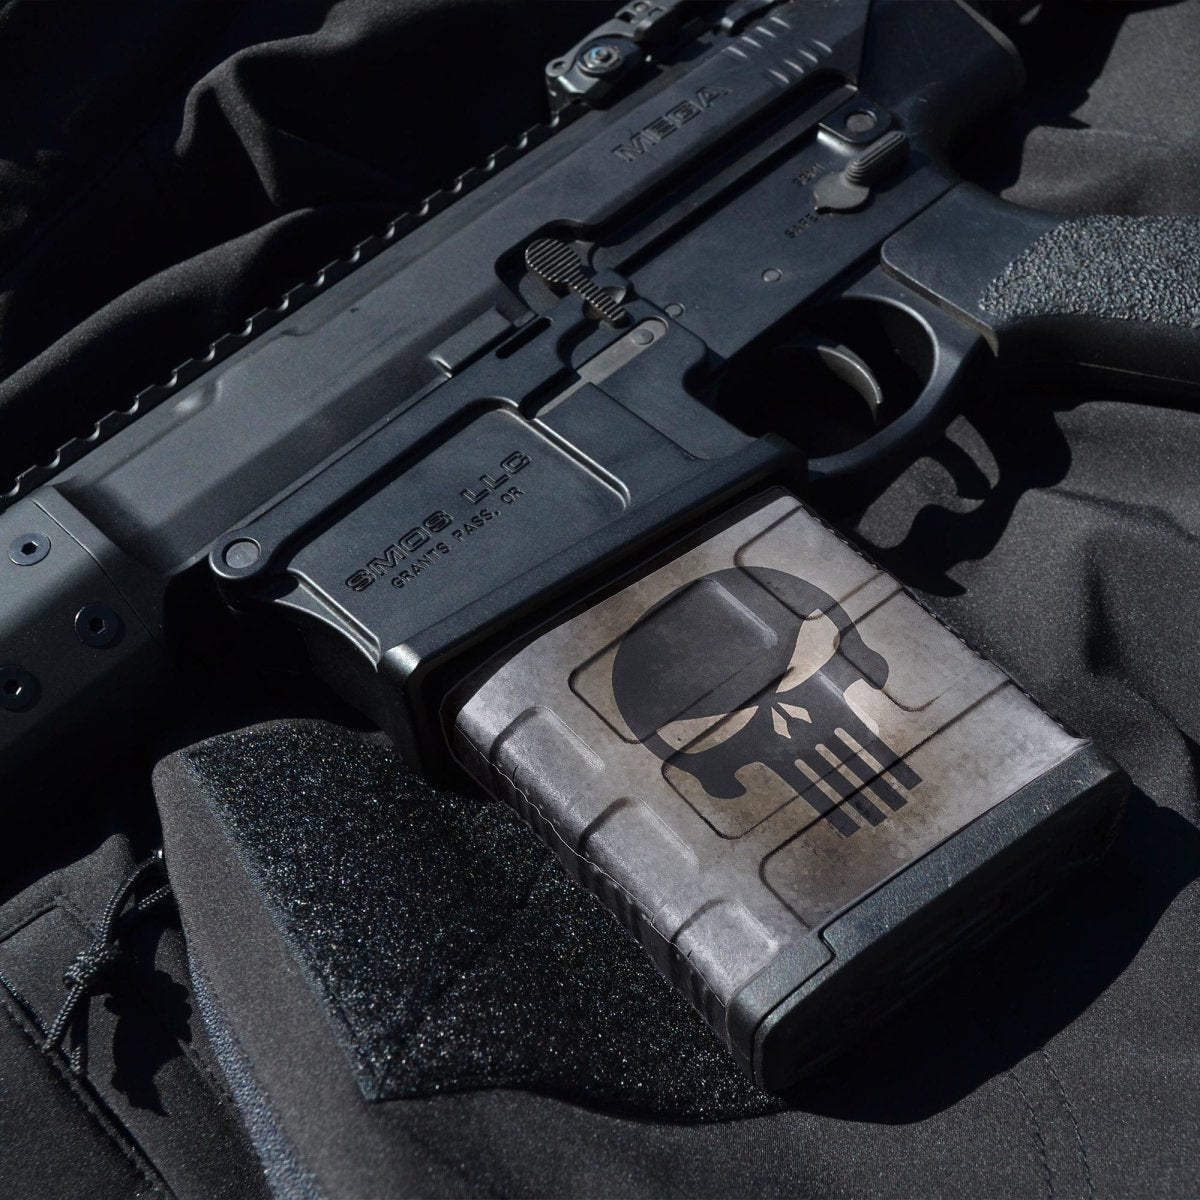 AR-10 Mag Skin - GunSkins